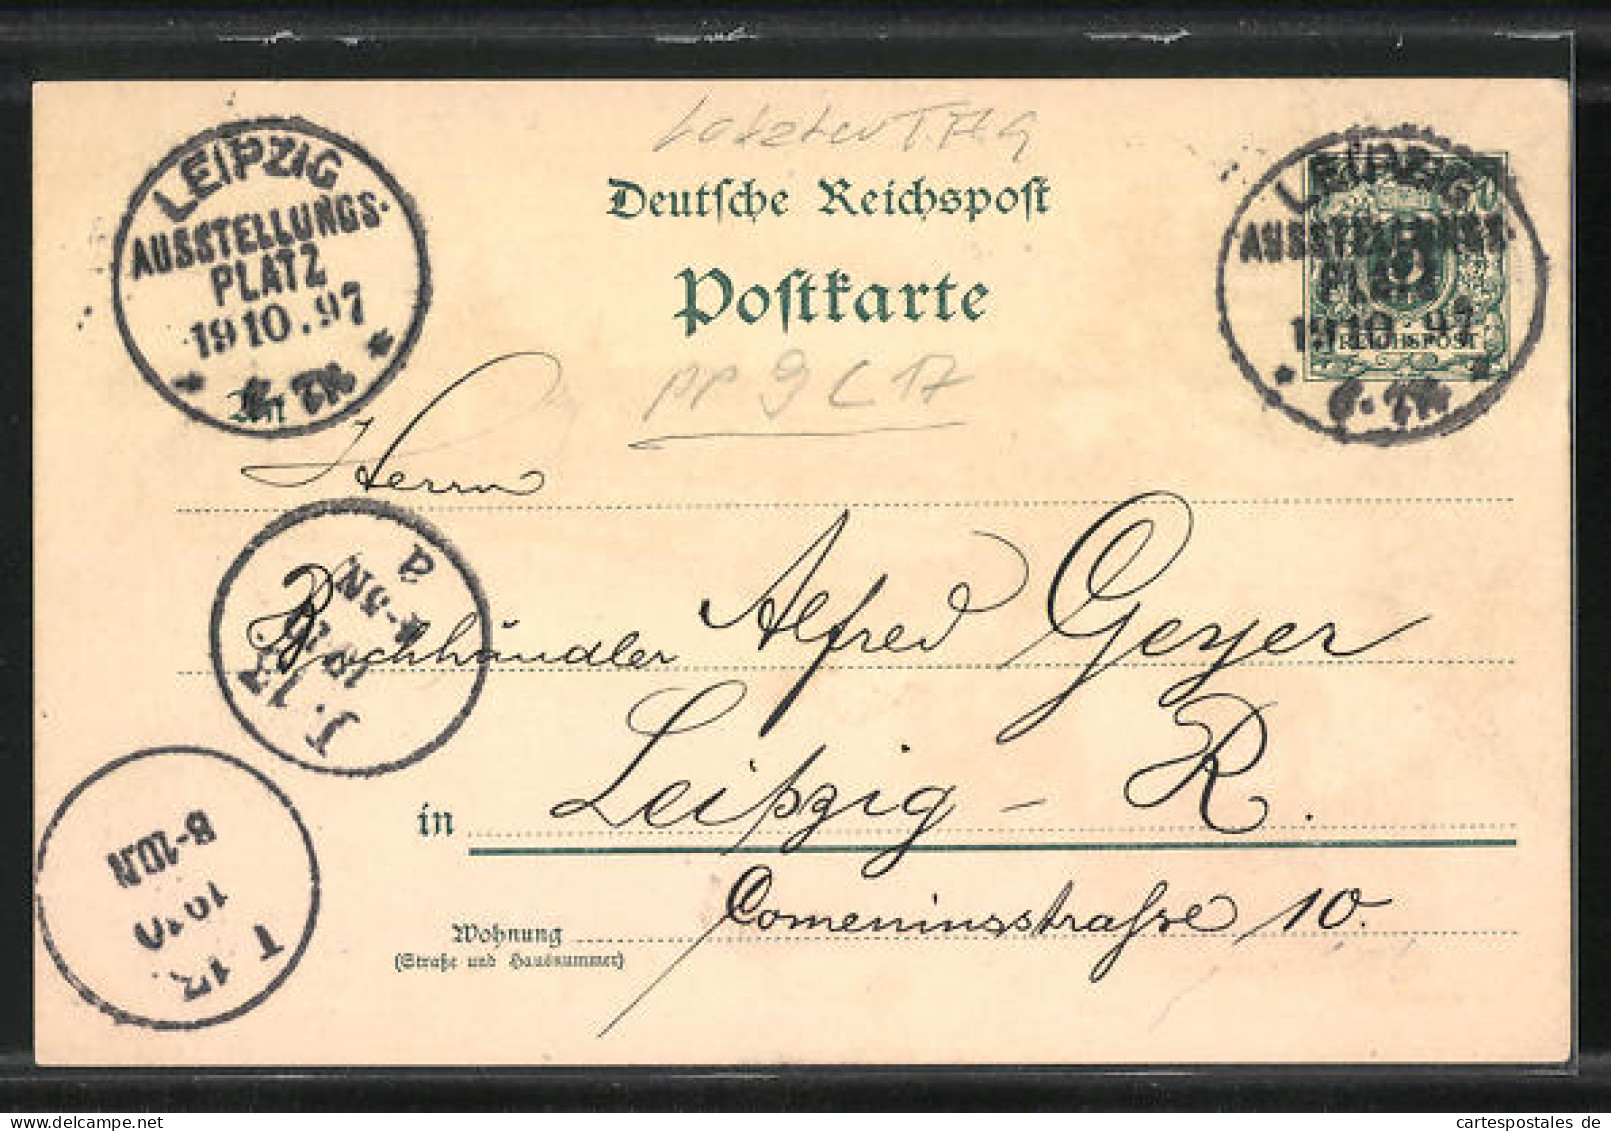 Lithographie Leipzig, Sächs.-Thür. Industrie U. Gewerbe-Ausstellung 1897, Reiterstandbild König Albert V. Sachsen  - Exhibitions